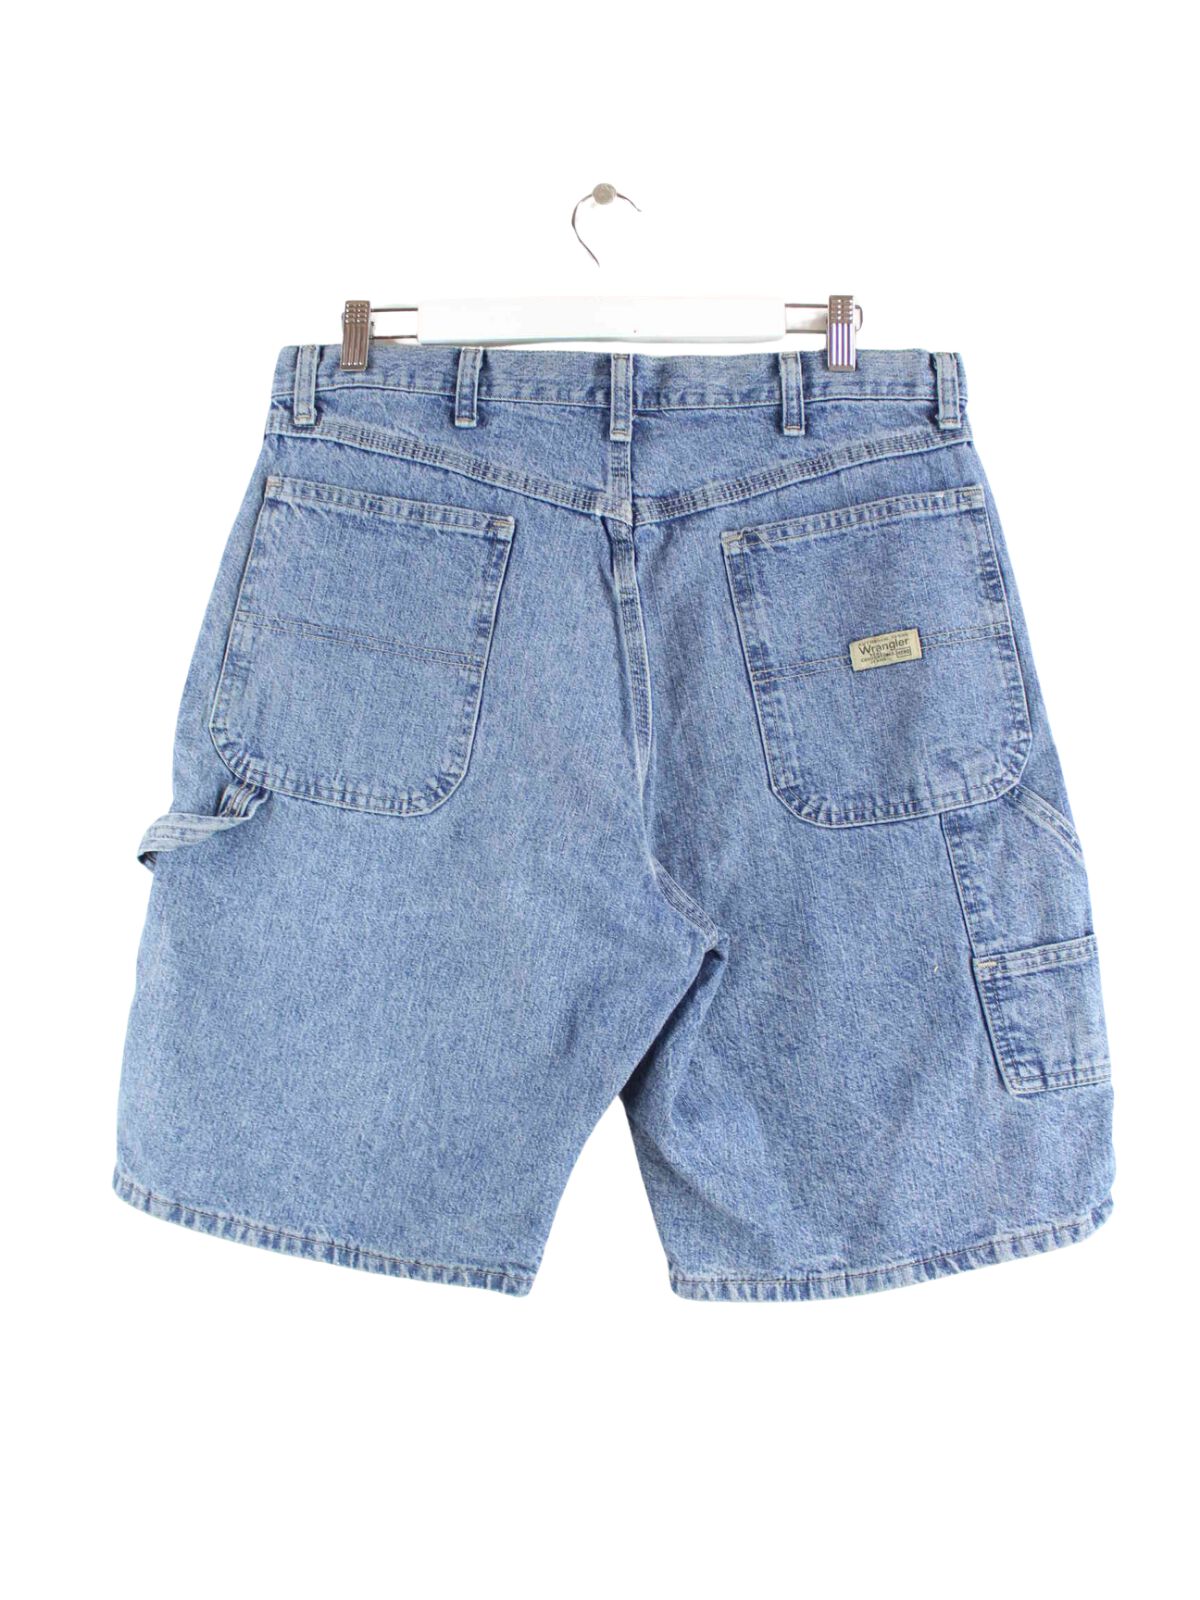 Wrangler Carpenter Workwear Shorts Blau W34 (back image)